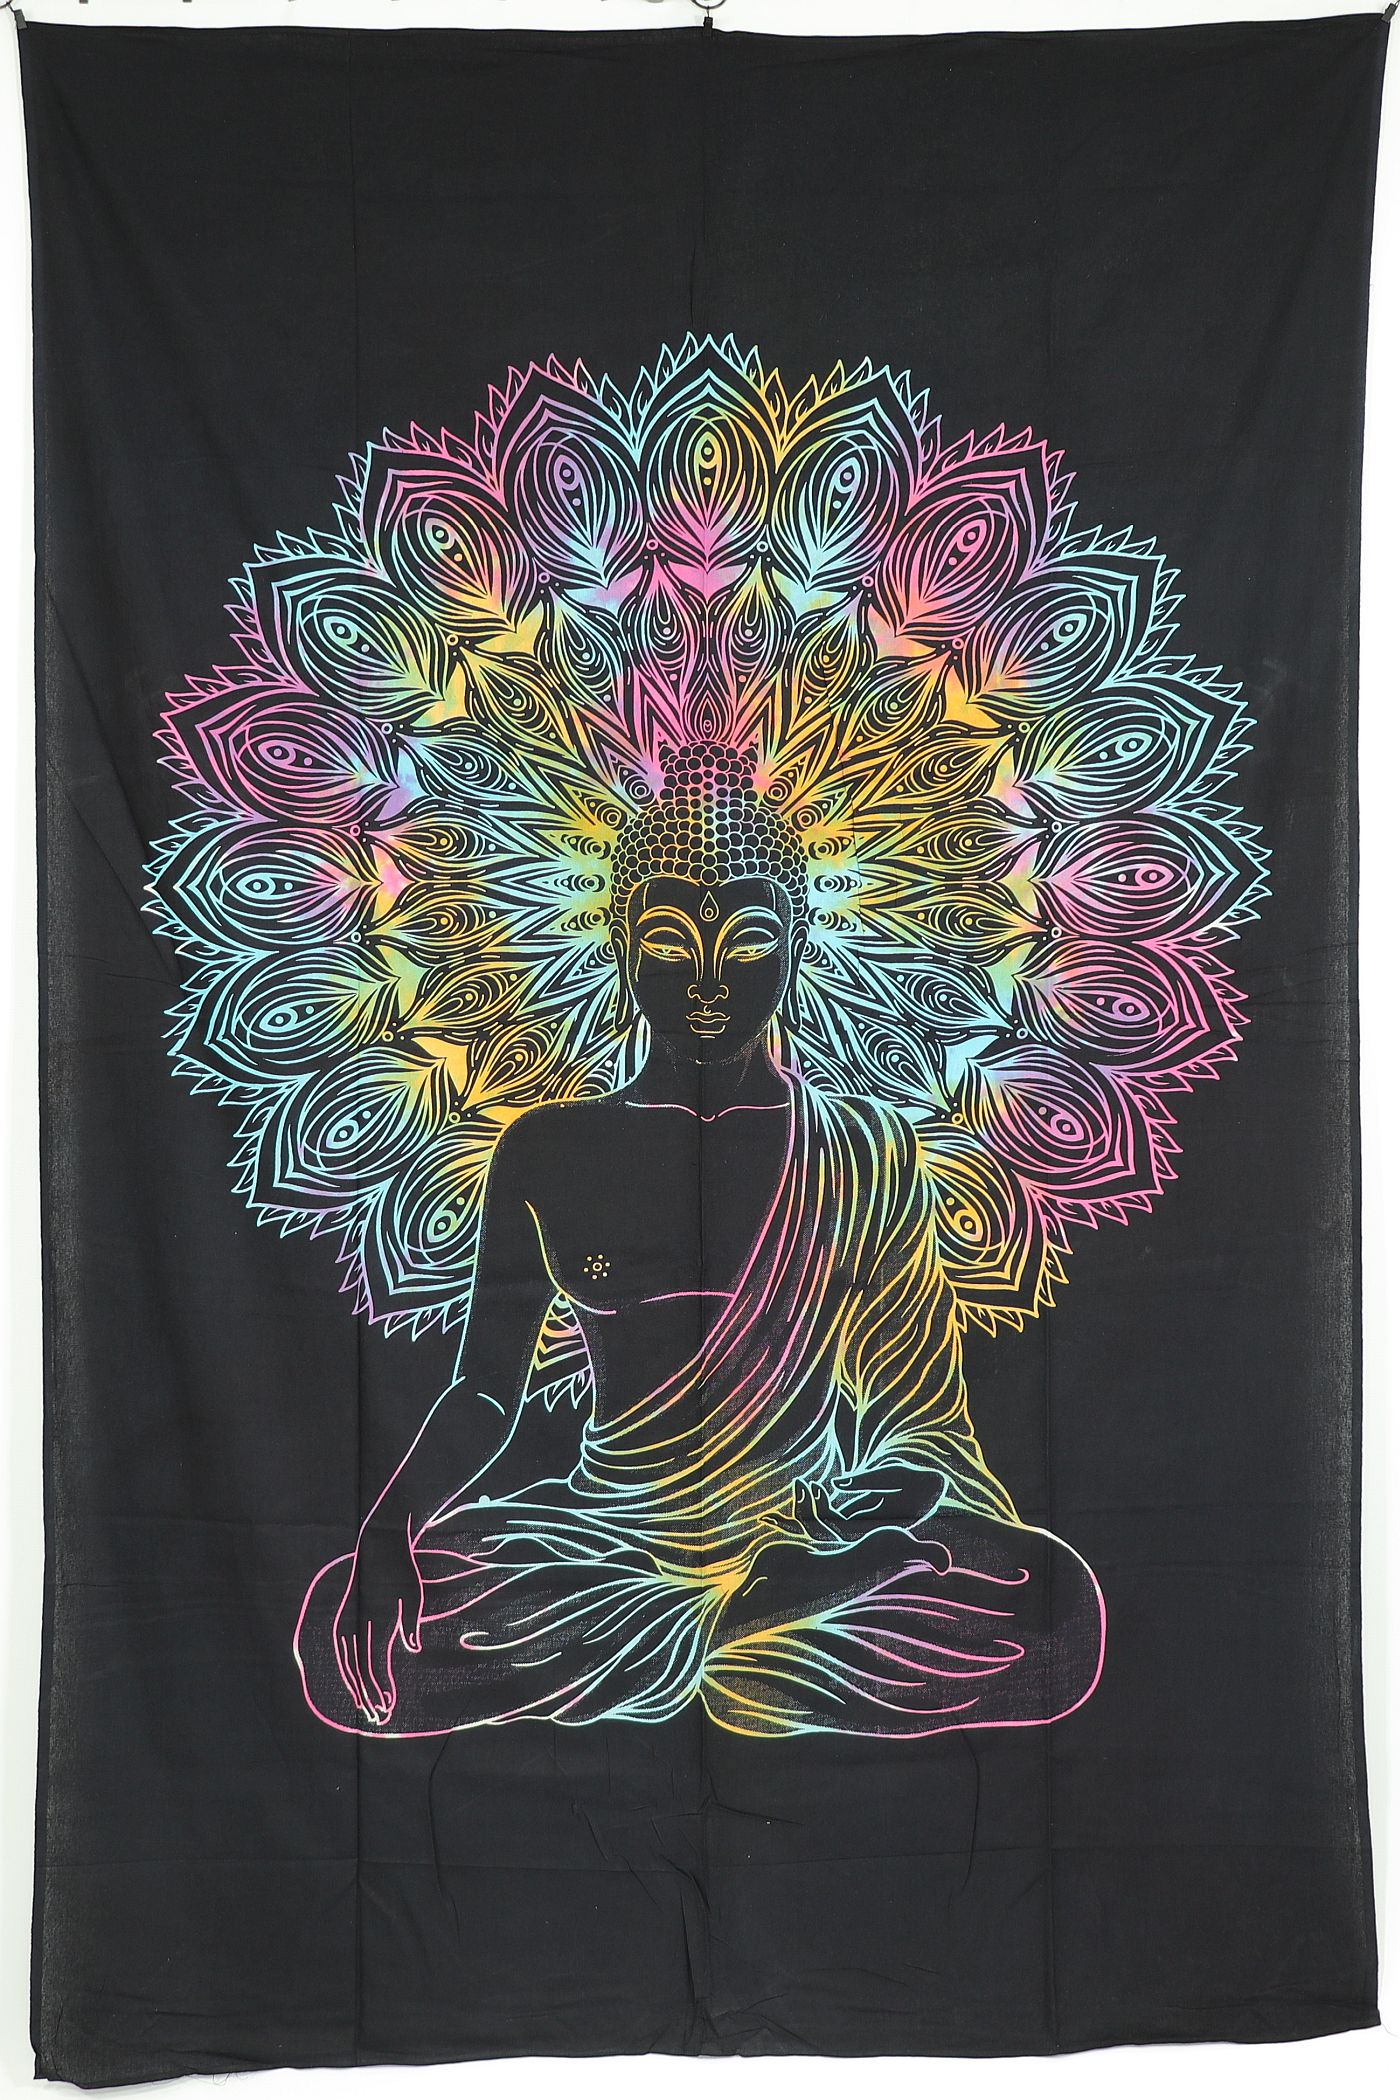 Wandtuch XL 130x210 - Buddha mit Mandala - 100% Baumwolle - detailreicher indischer Druck - mehrfarbig - FARBE - dekoratives Tuch, Wandbild, Tagesdecke, Bedcover, Vorhang, Picknick-Decke, Strandtuch